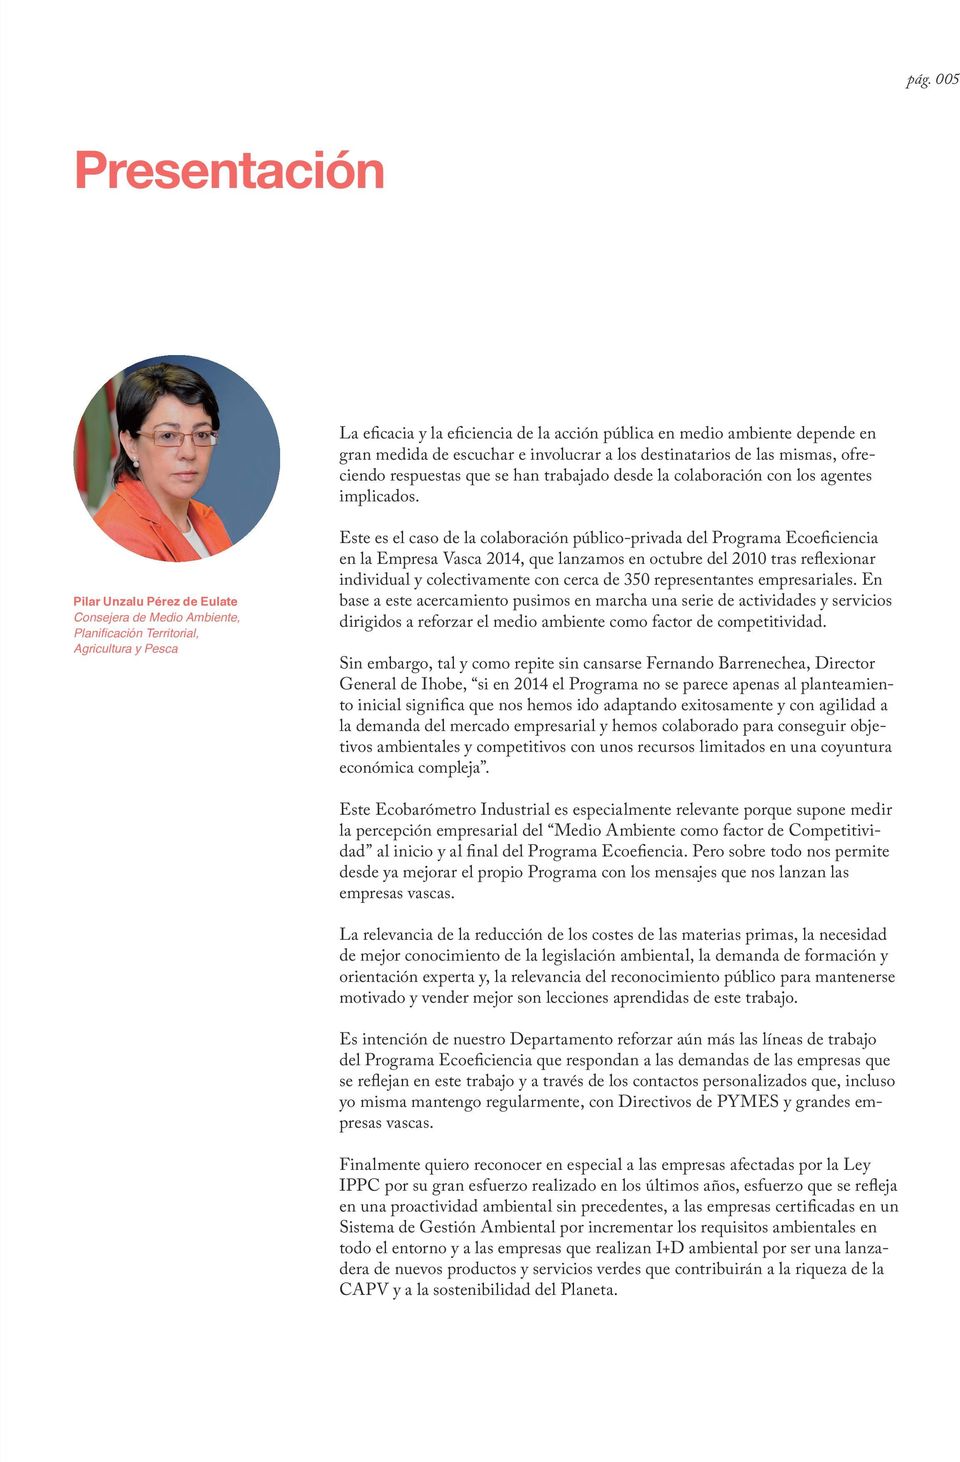 Pilar Unzalu Pérez de Eulate Consejera de Medio Ambiente, Planificación Territorial, Agricultura y Pesca Este es el caso de la colaboración público-privada del Programa Ecoeficiencia en la Empresa